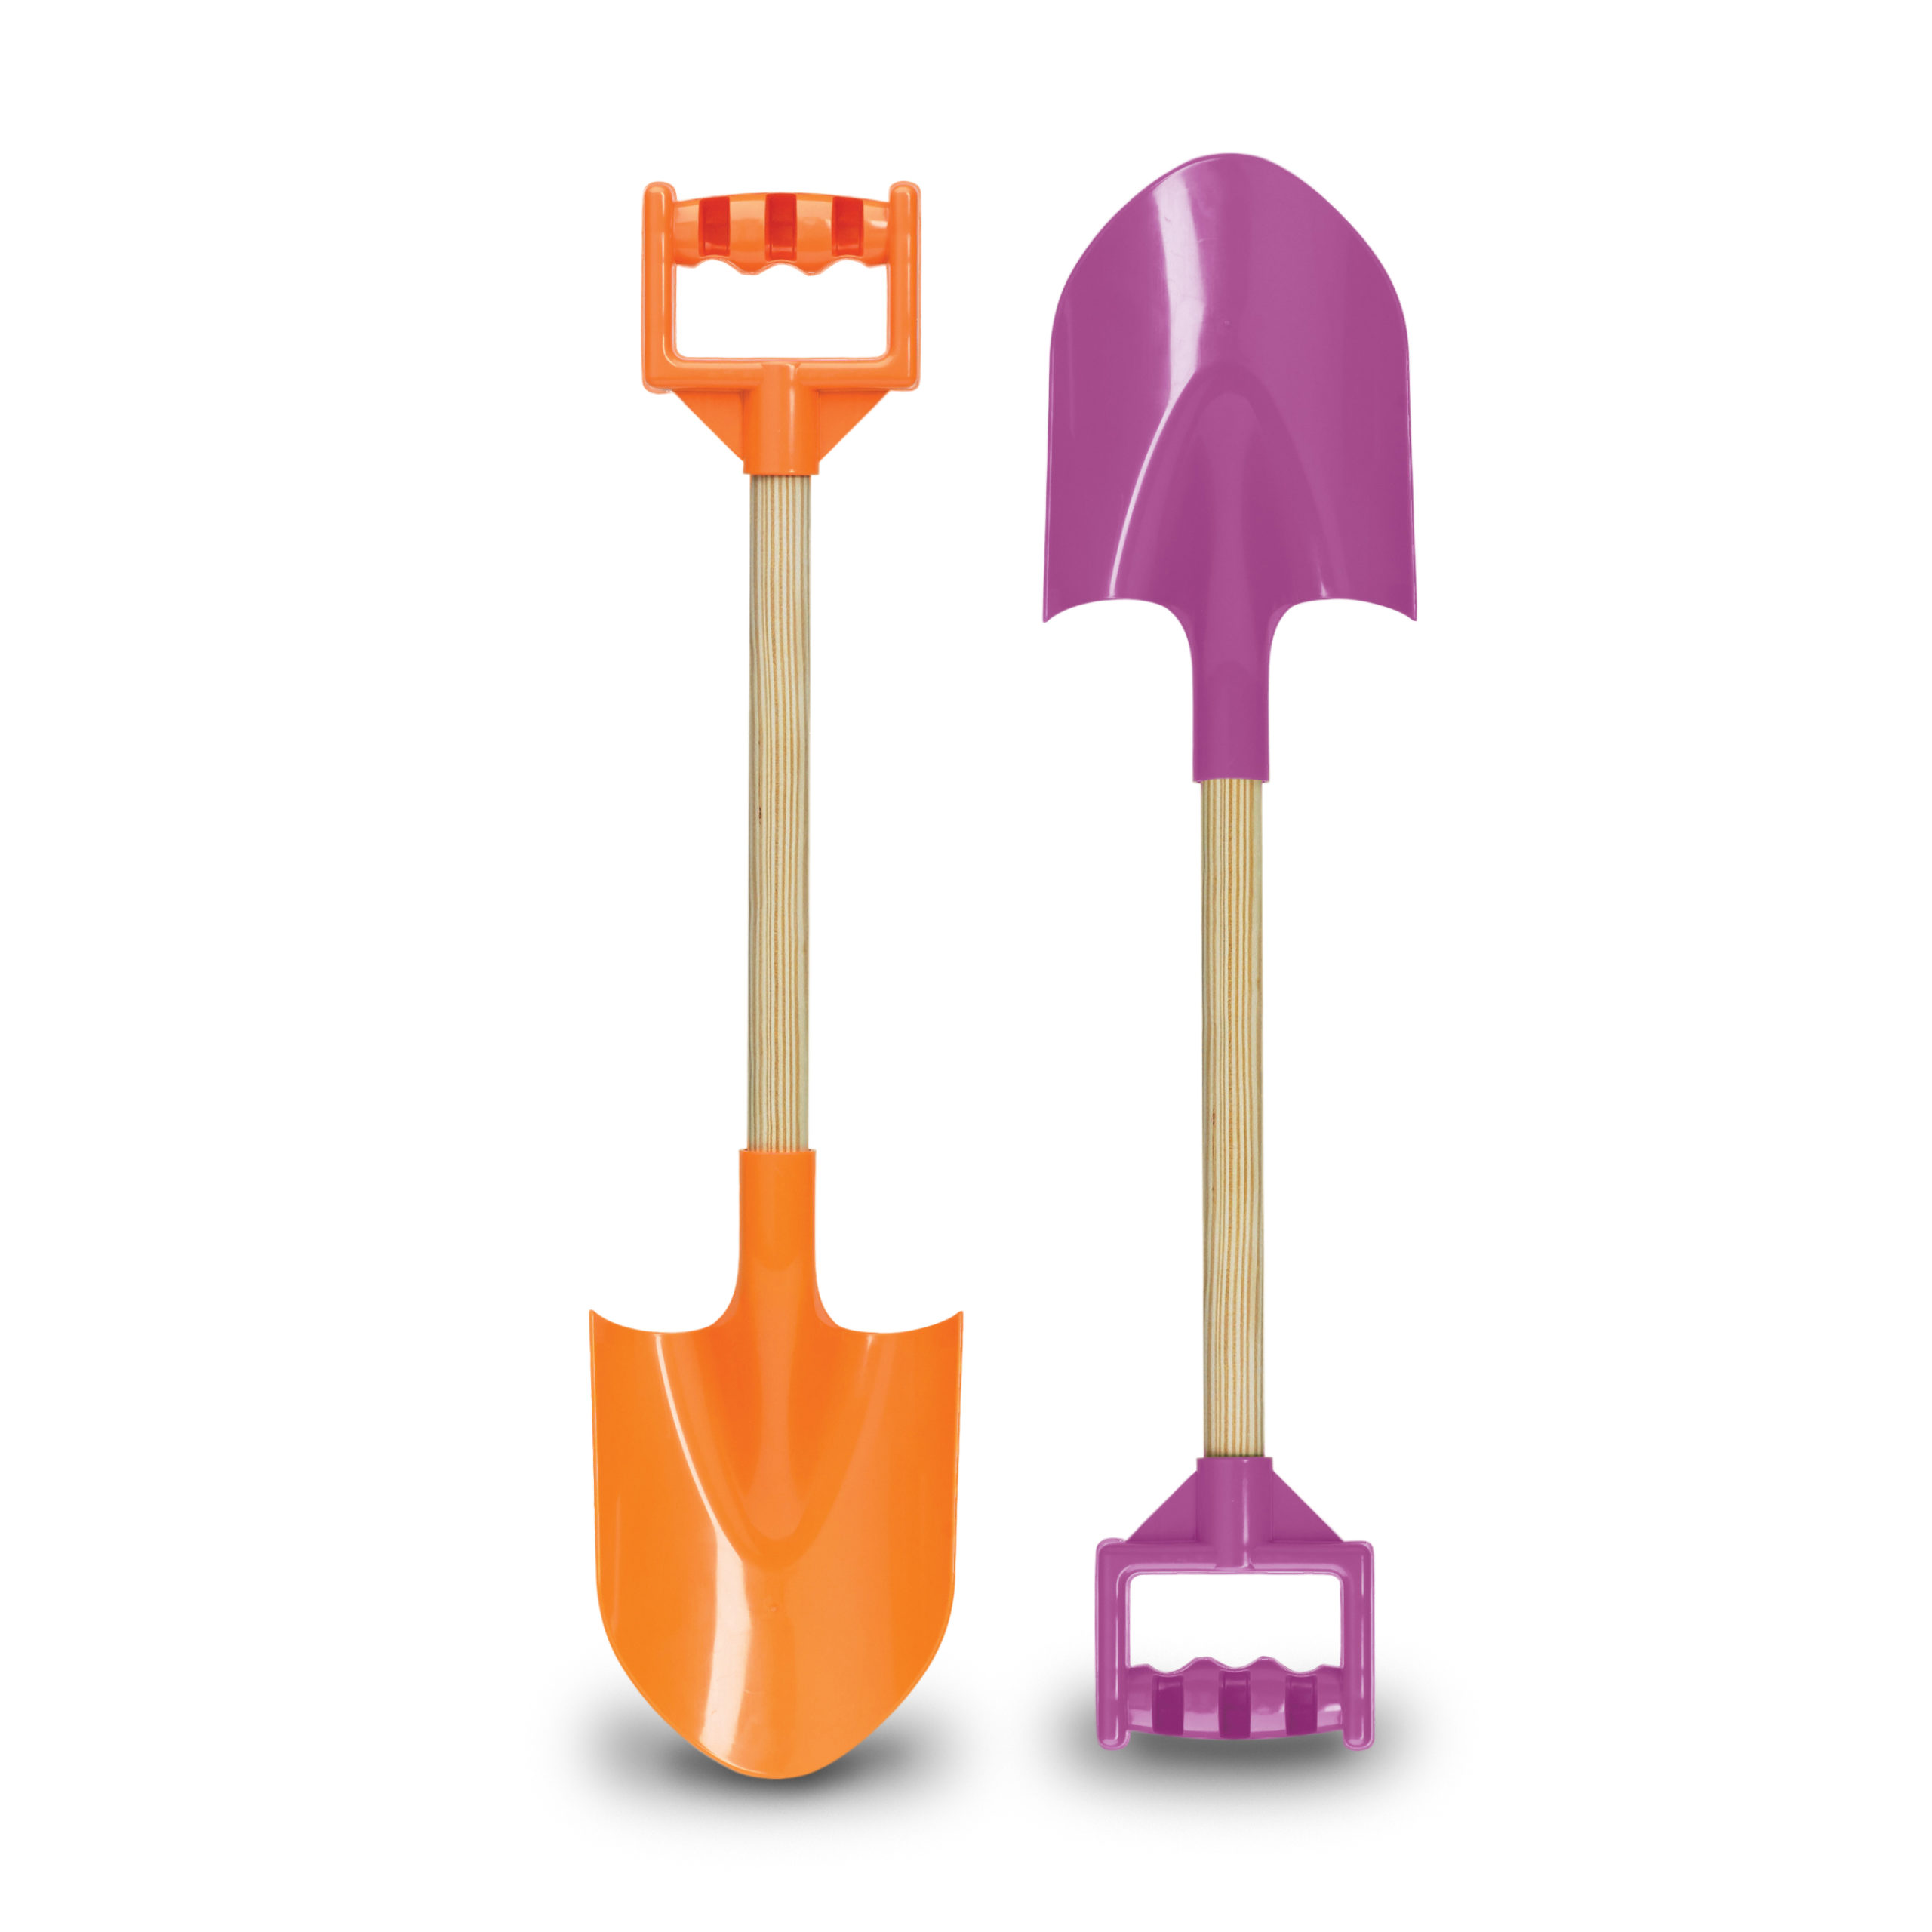 Pails & Shovels – American Plastic Toys